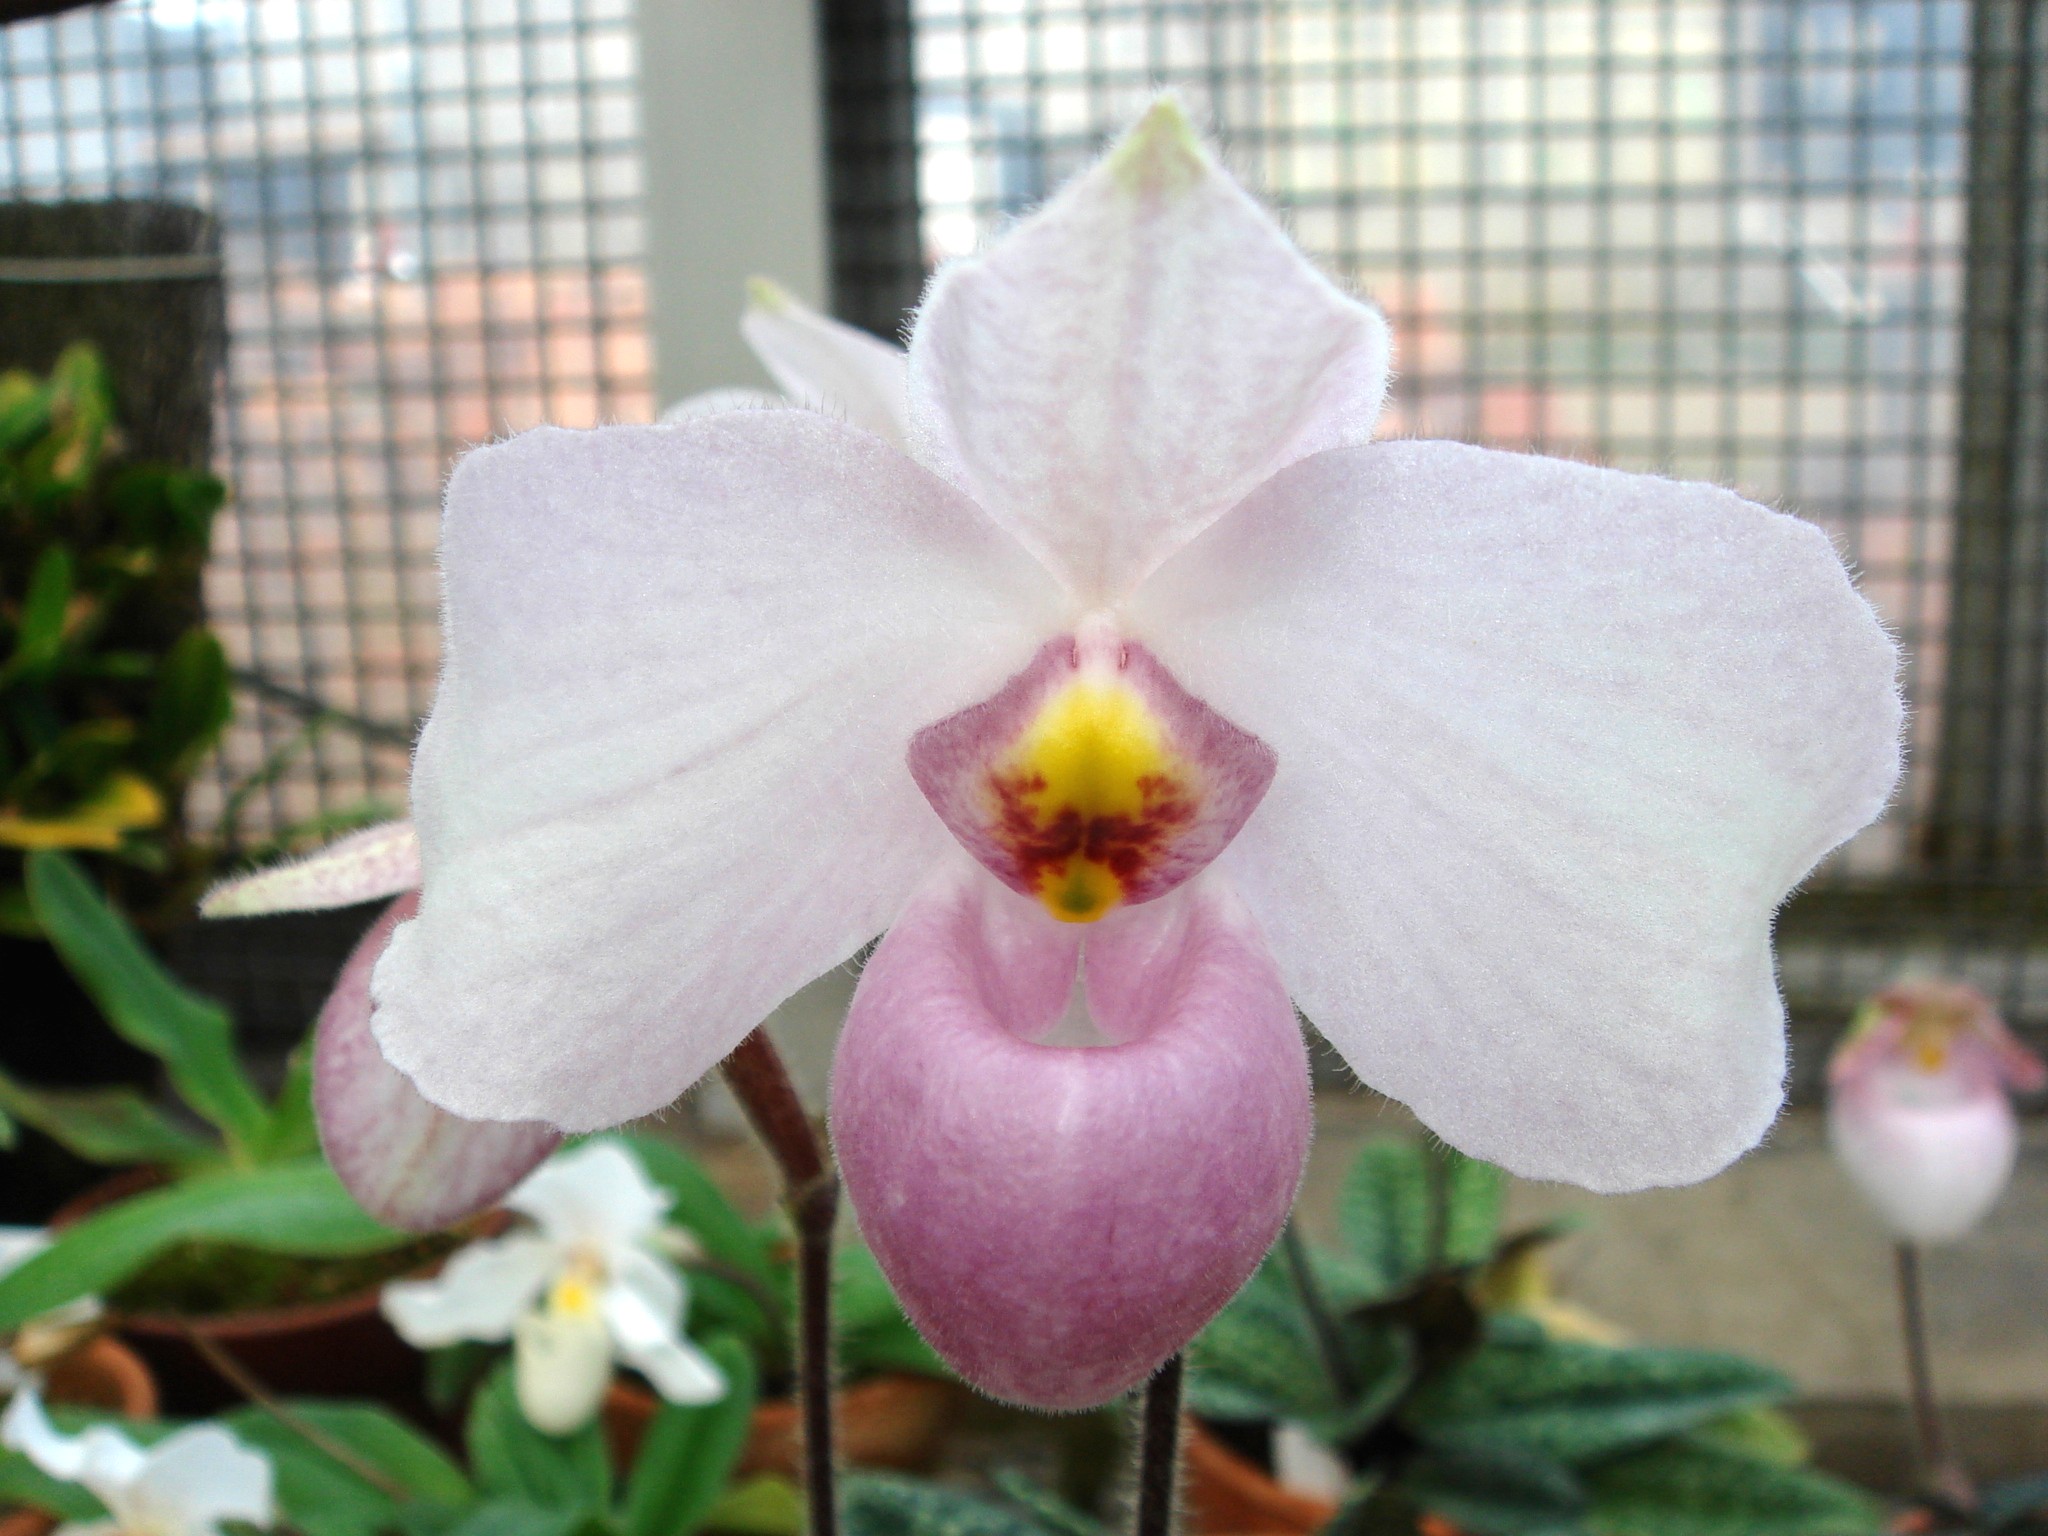 http://orchids.la.coocan.jp/Paphiopedilum/Paphiopedilum%20delenatii/DSC04082.JPG